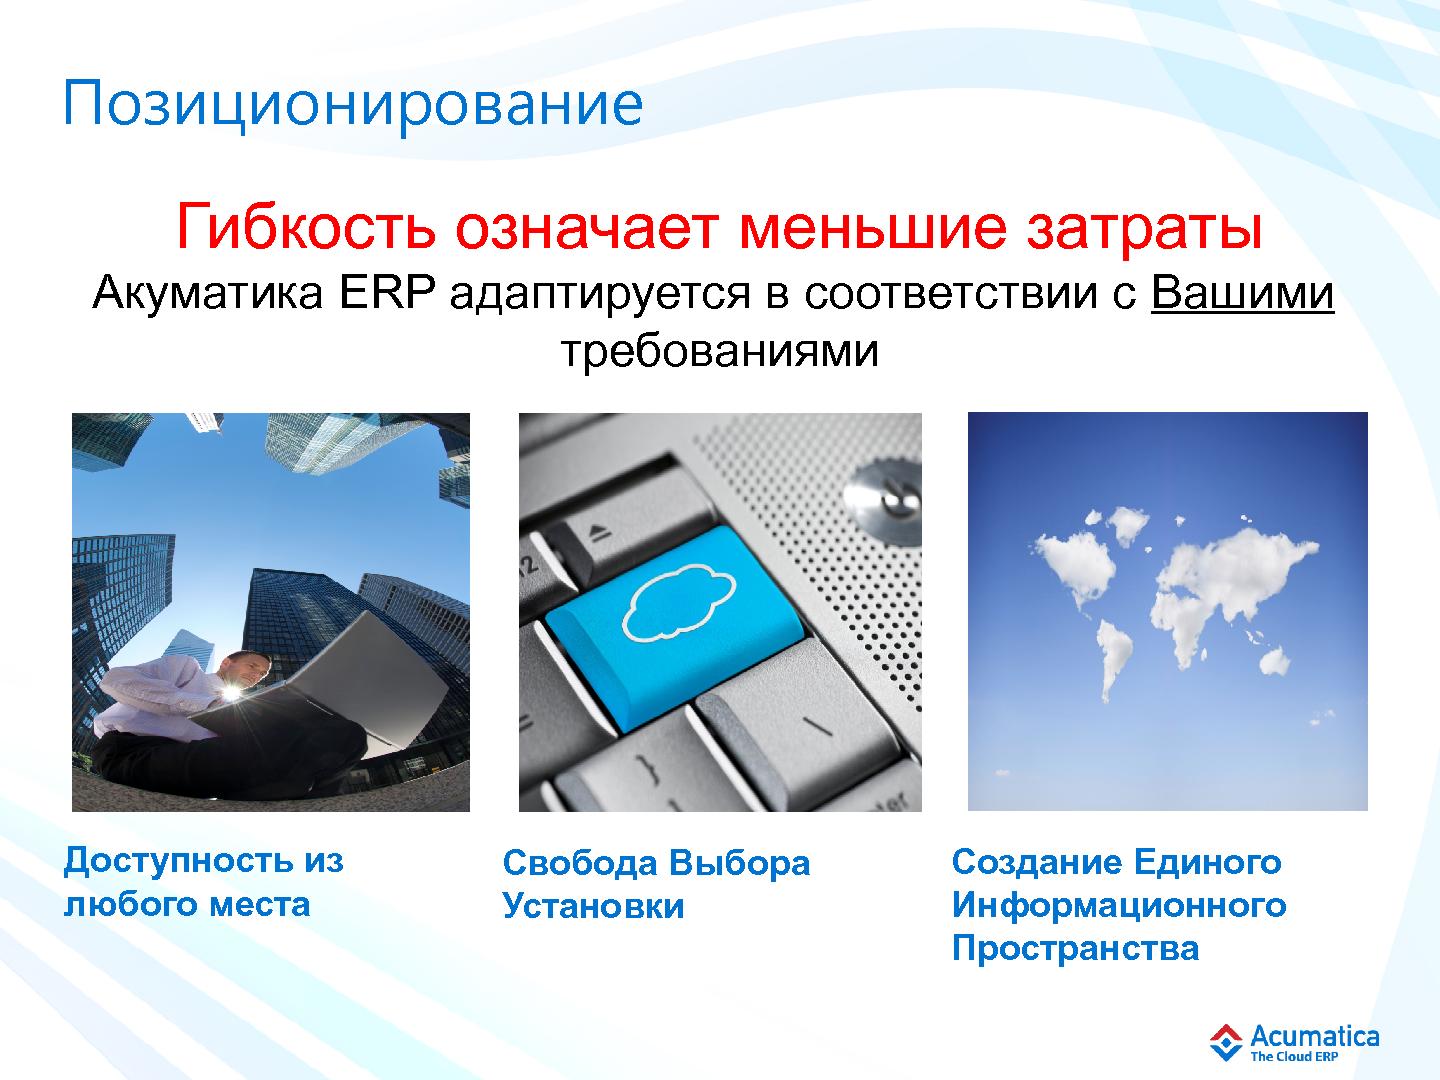 Файл:Эффективная разработка сложных облачных бизнес-приложений (Михаил Щелконогов, SECR-2012).pdf